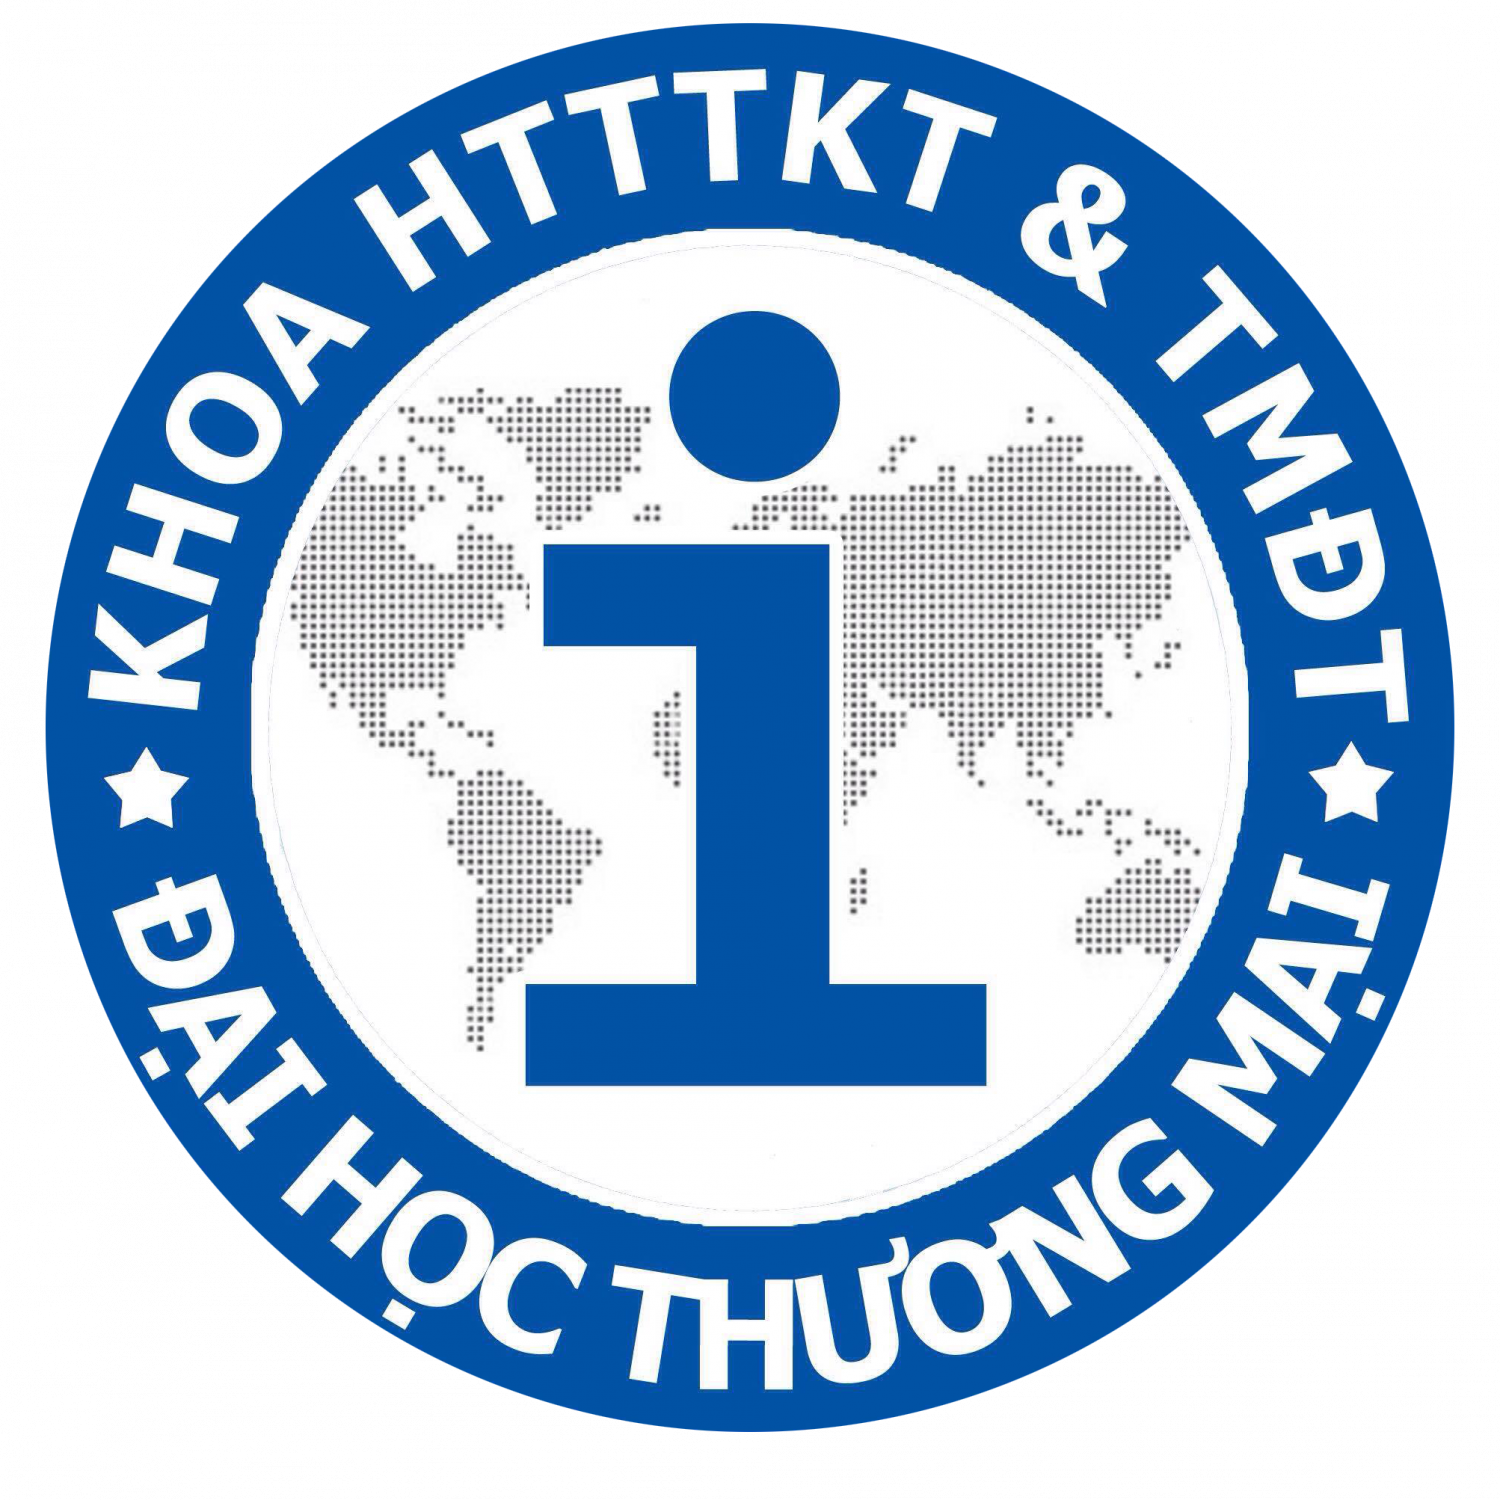 Thư mời viết bài Hội thảo quốc gia "Phát triển TMĐT Việt Nam trong kỷ nguyên số"